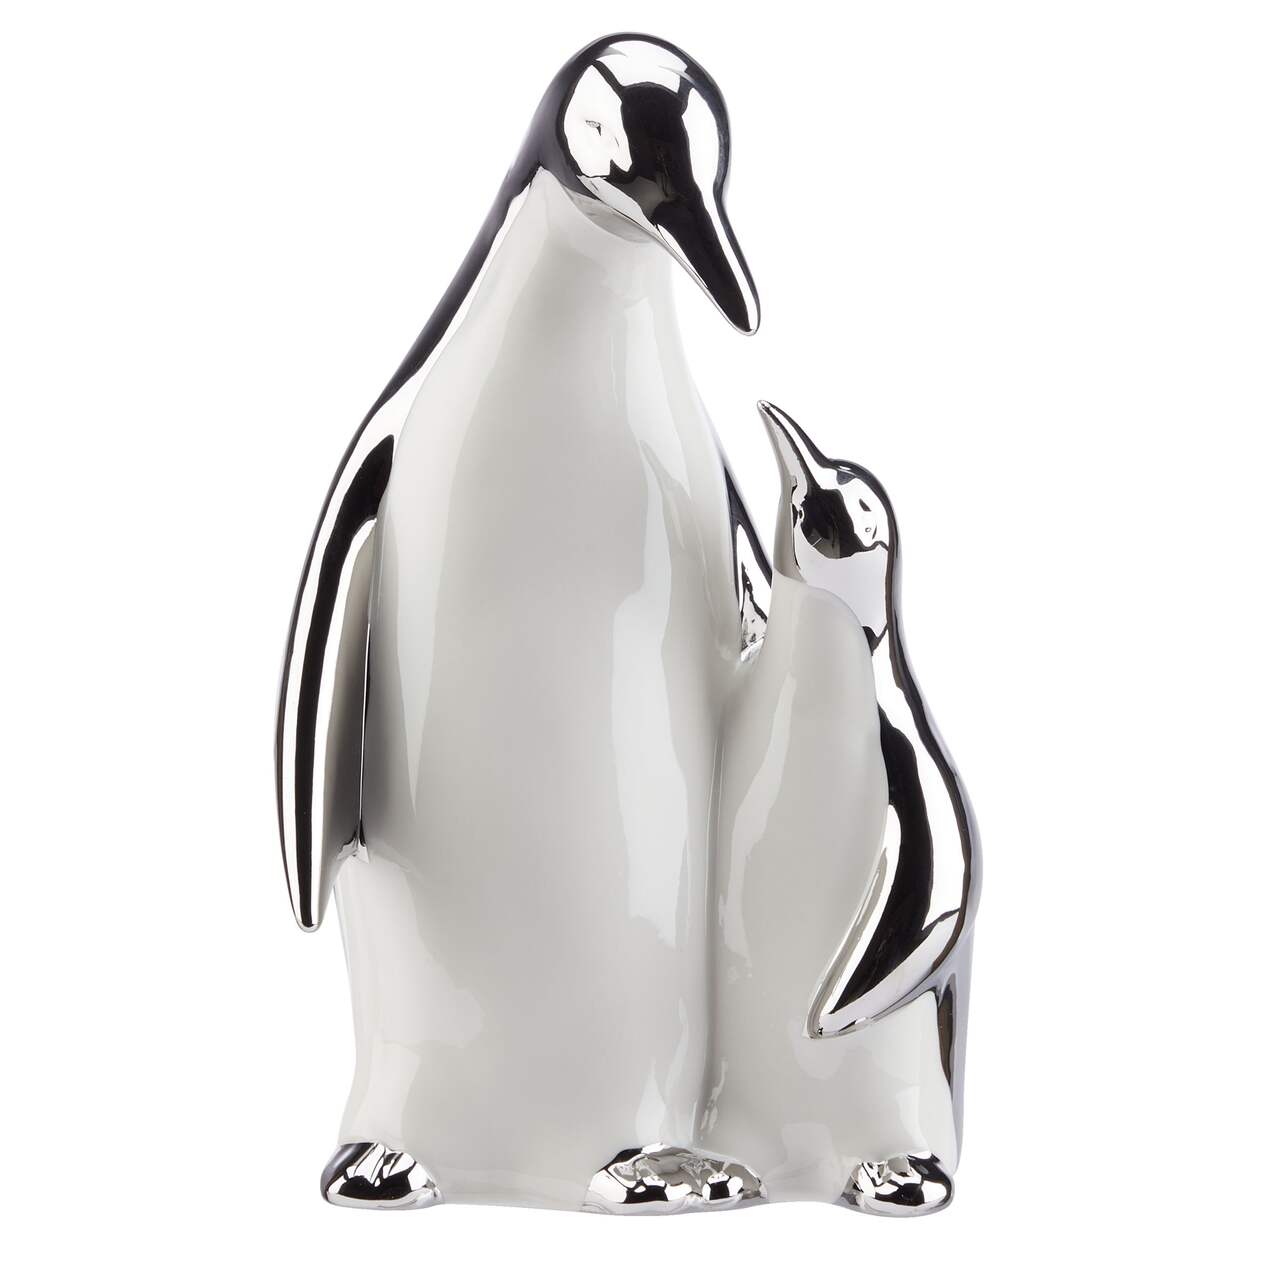 Pingouin en Métal Recyclé - Décoration Artisanale Écologique